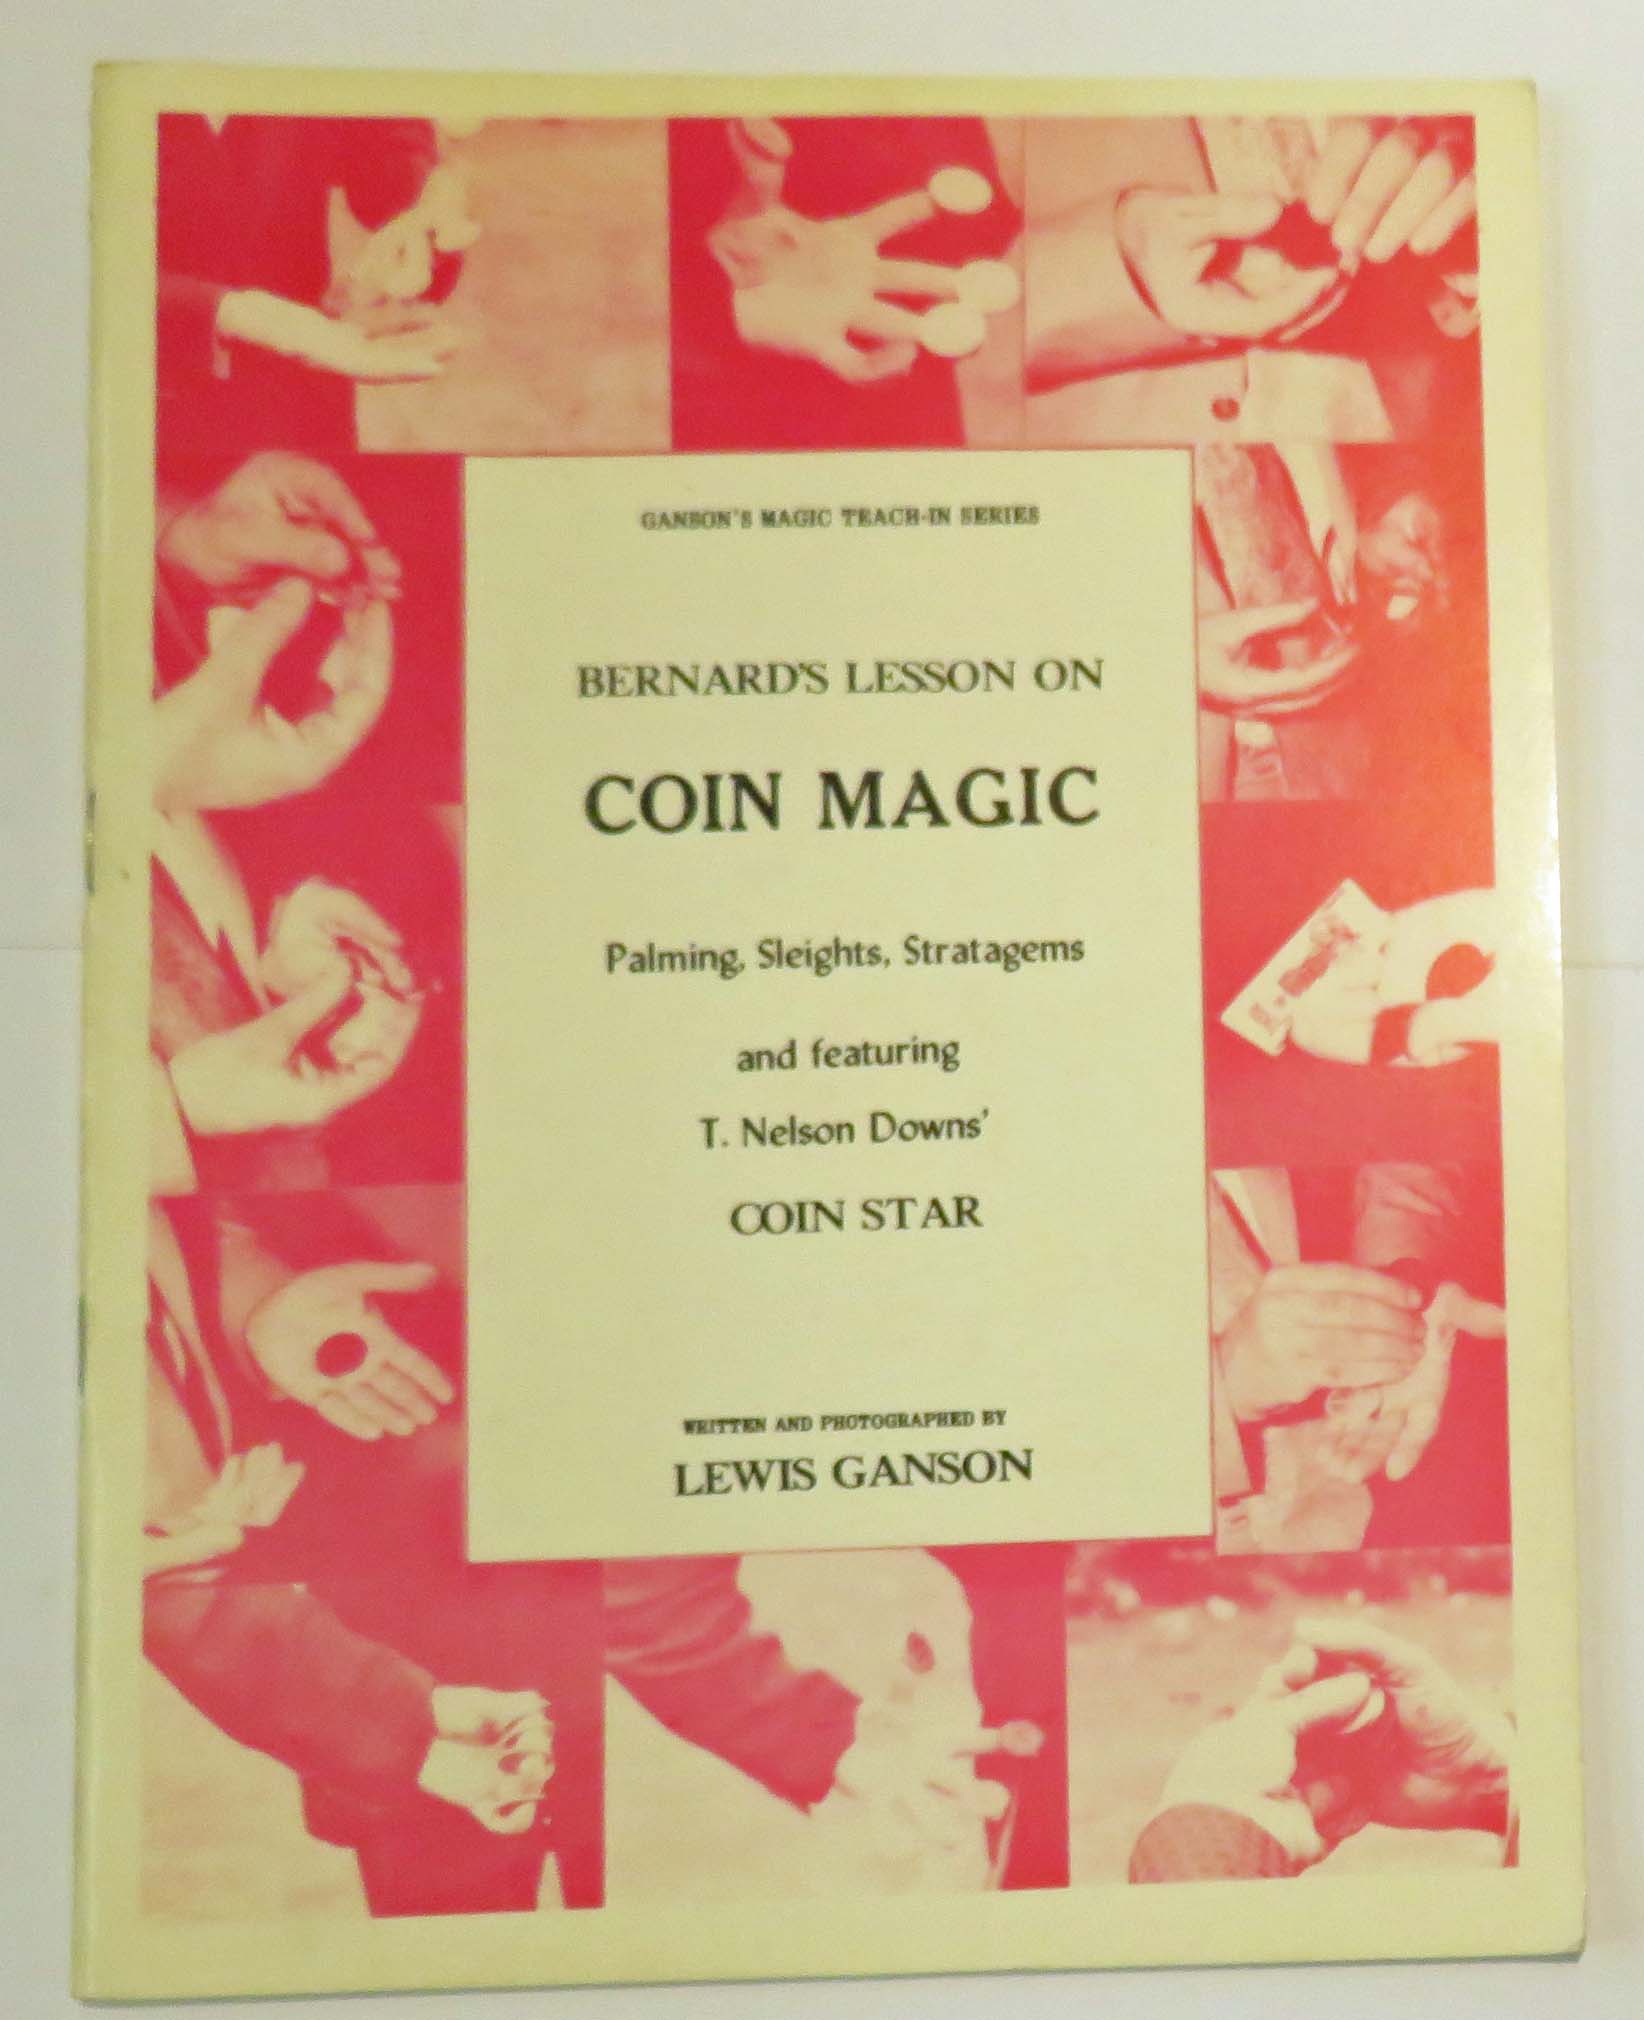 Ganson's Magic Teach In Series Bernard's Lesson On Coin Magic 